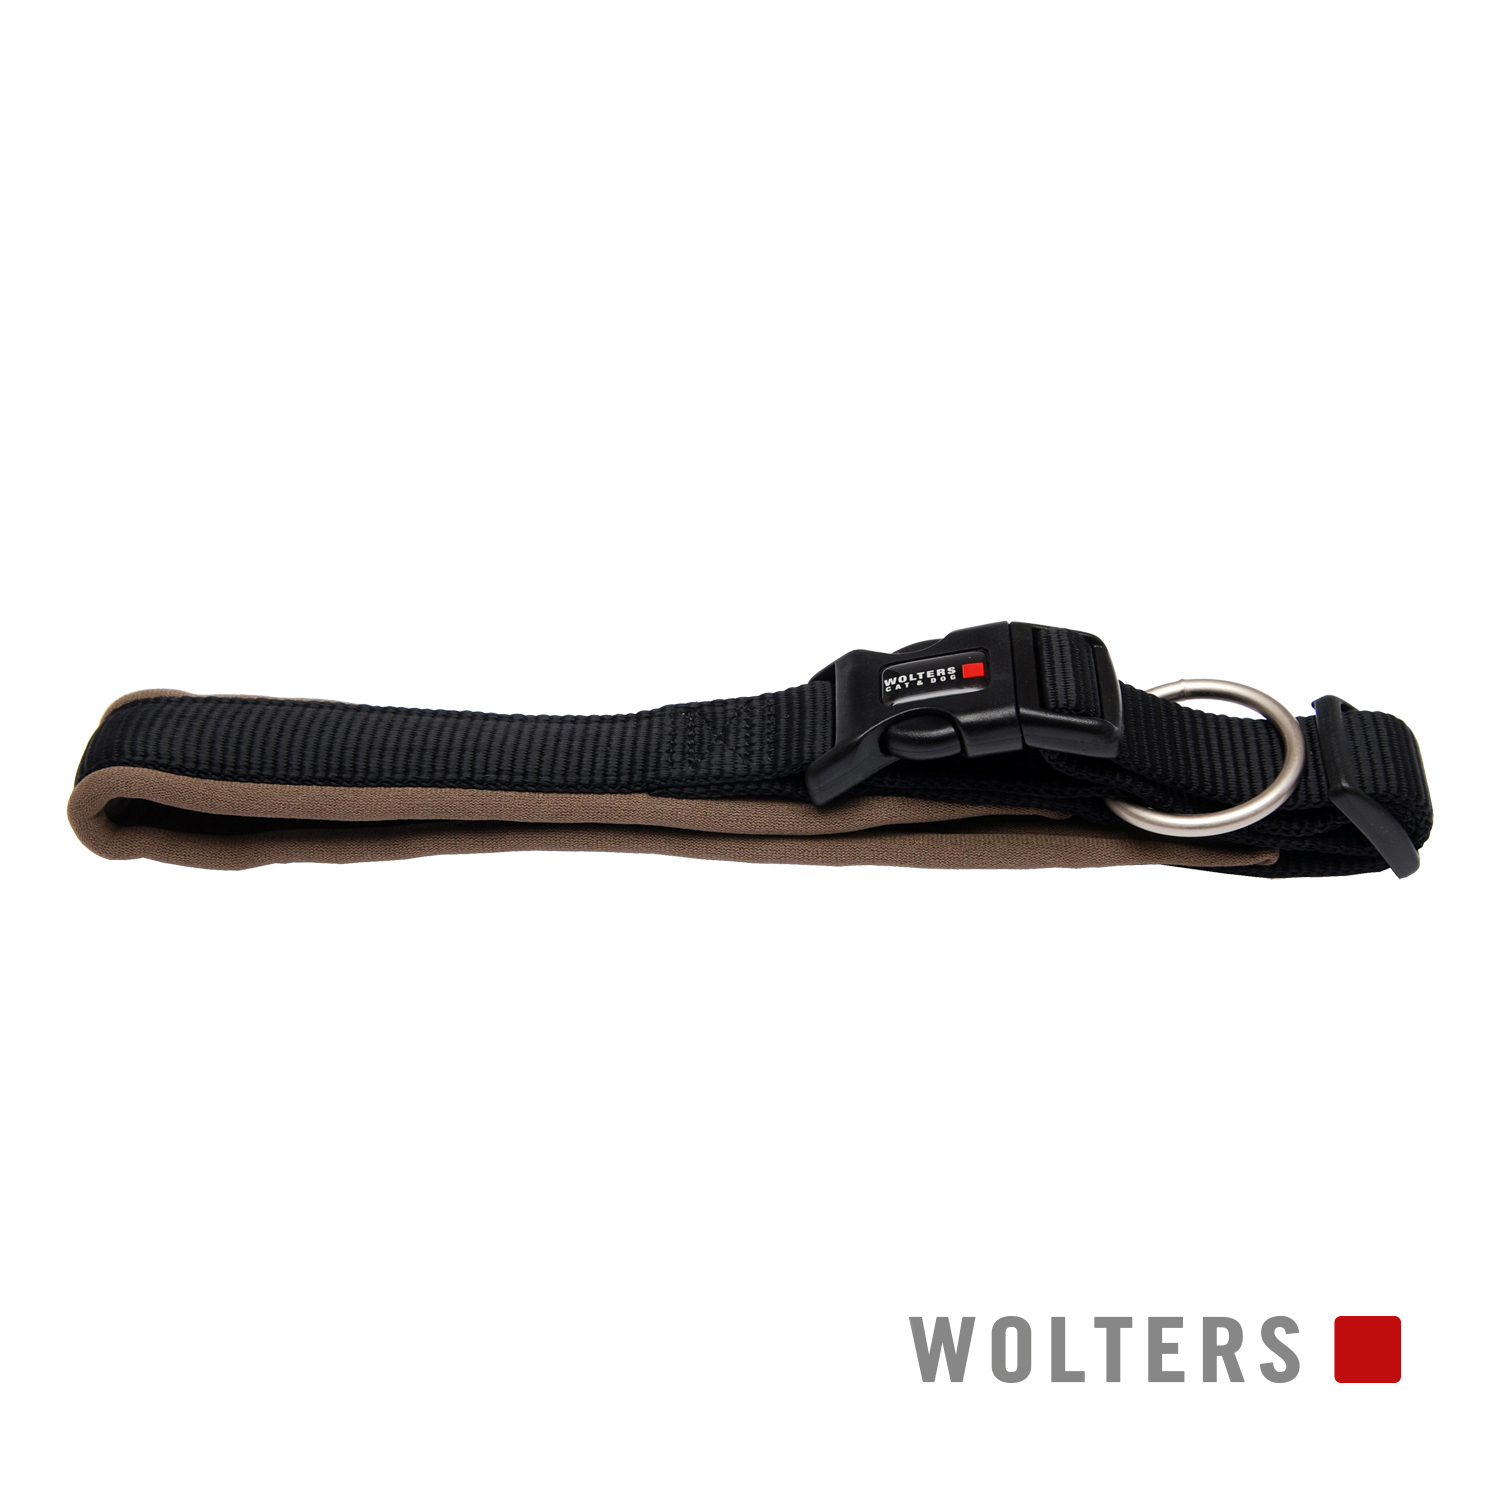 Wolters Halsband Professional Comfort Schwarz/Braun 55-60cm x 35mm